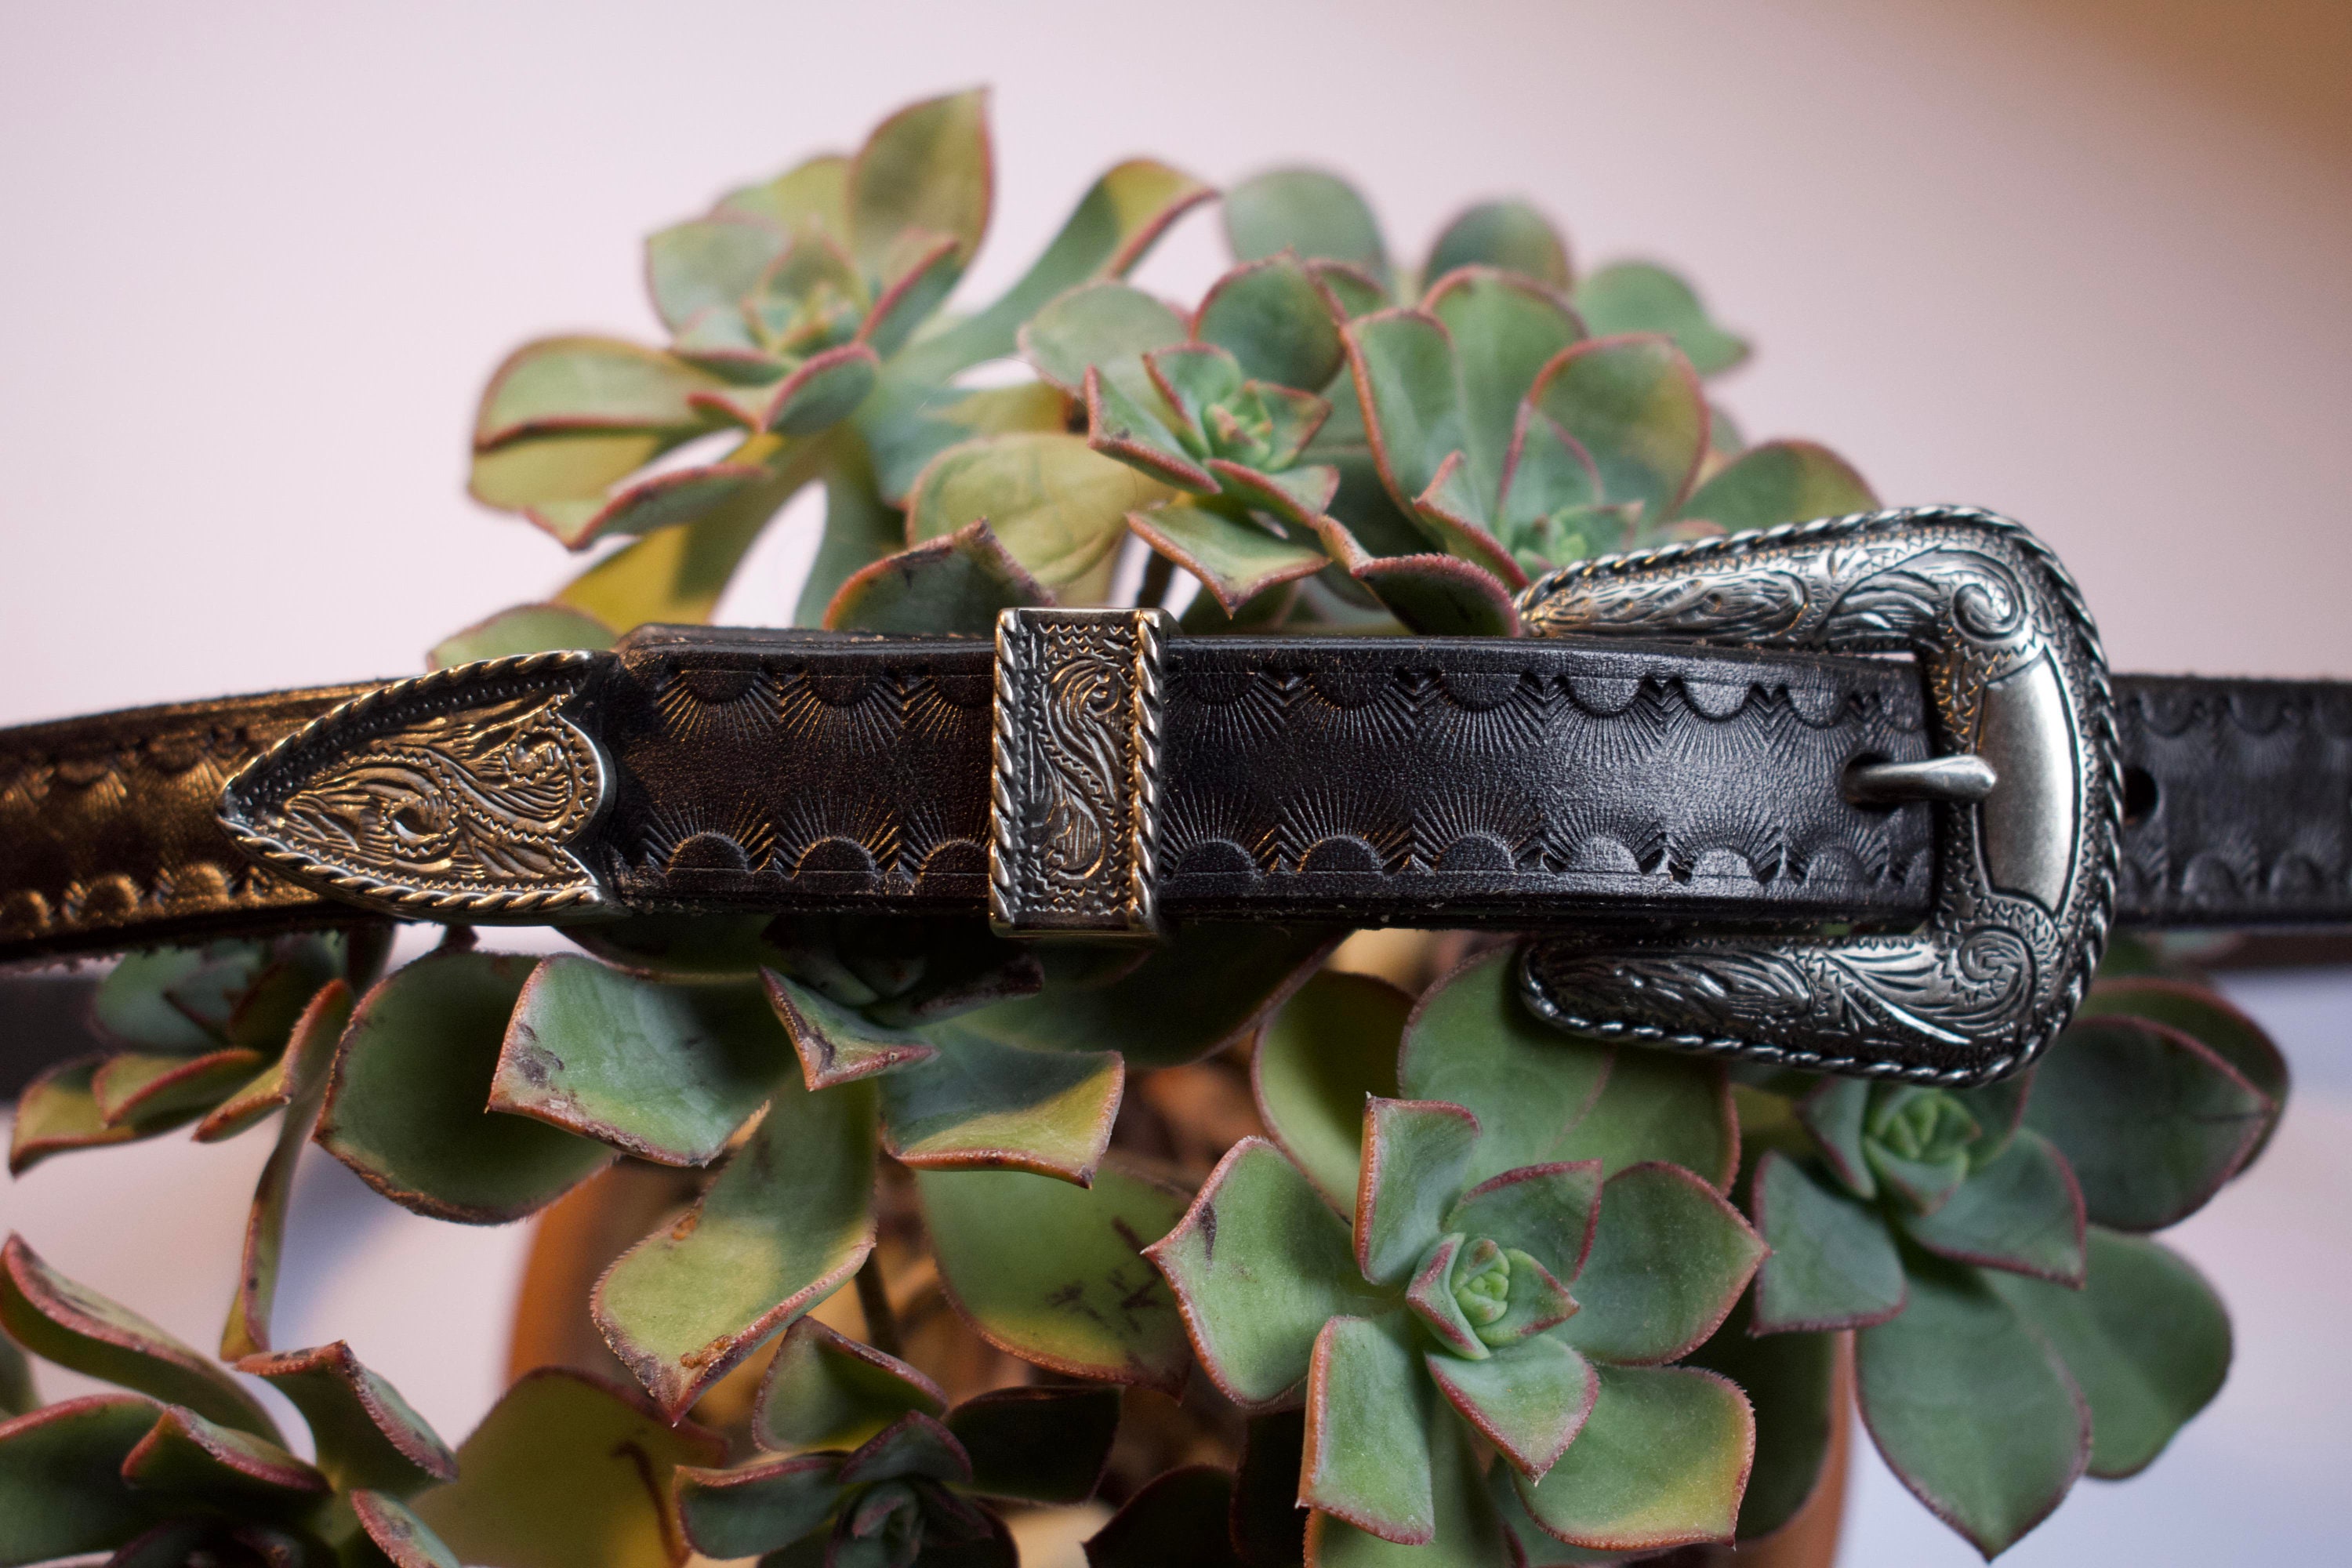 Rise - 7mm Vintage Leather Belt